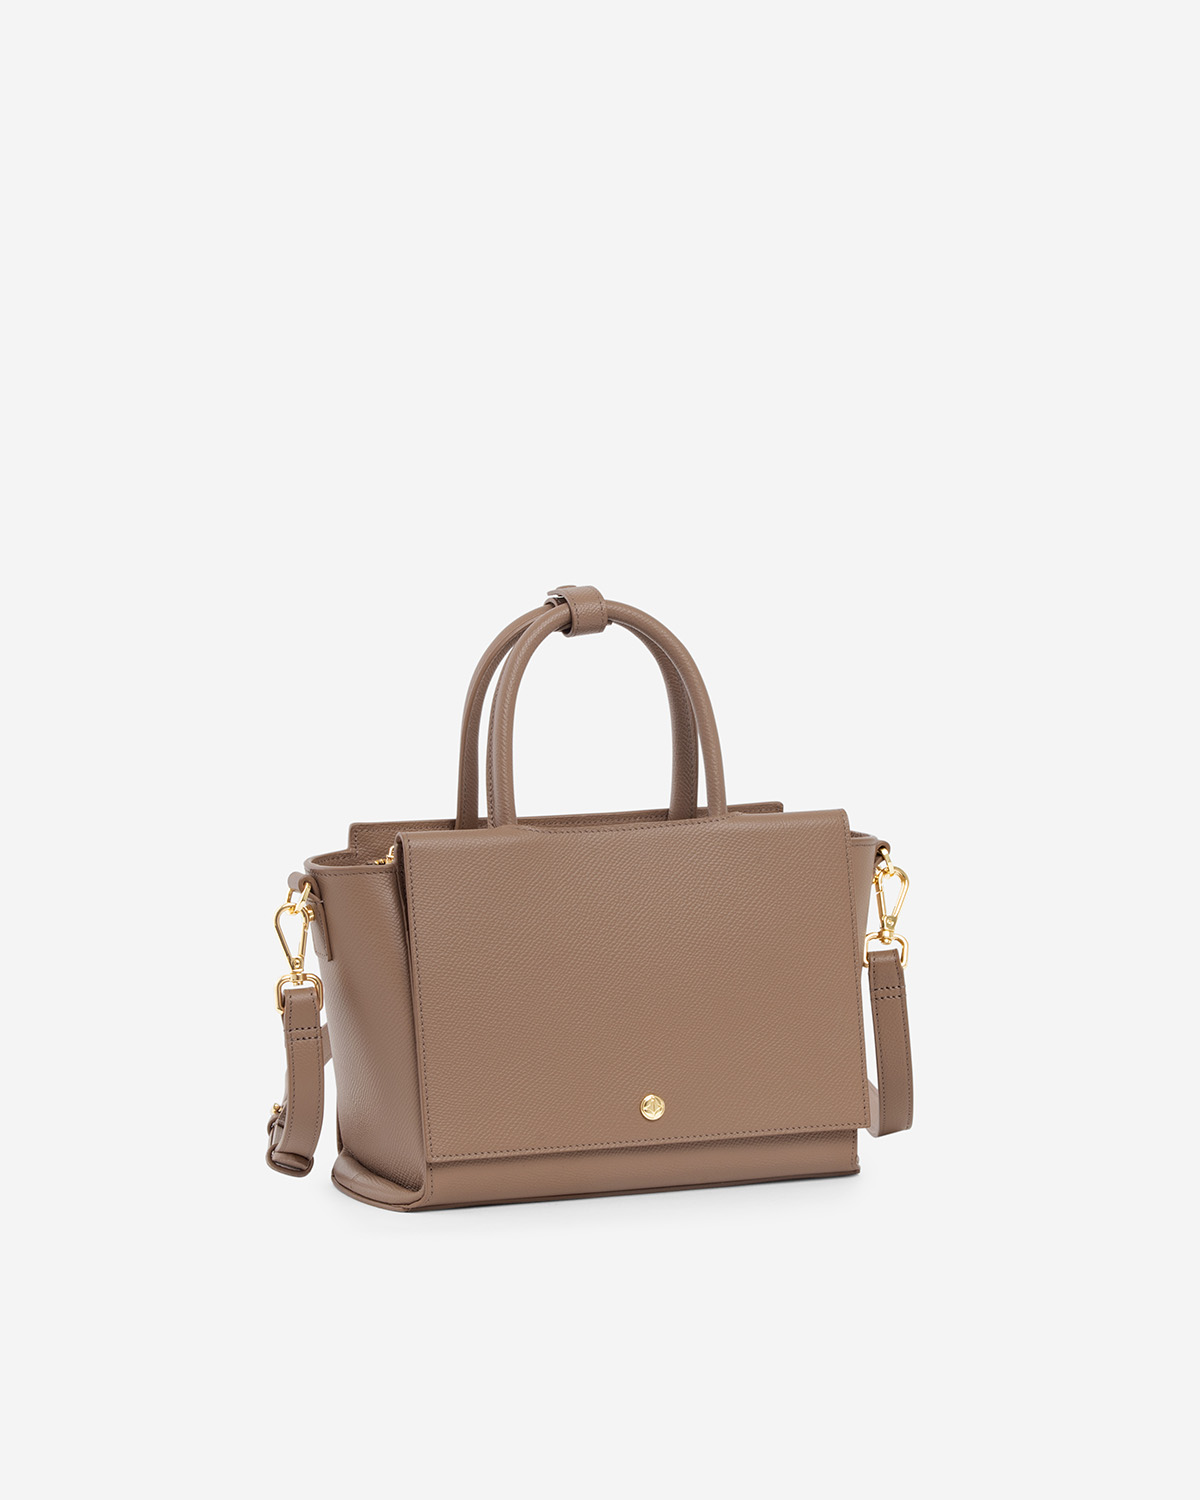 กระเป๋าถือหนังแท้ VERA Heidi Leather Handbag, ไซส์ 25 สี Wood Rose